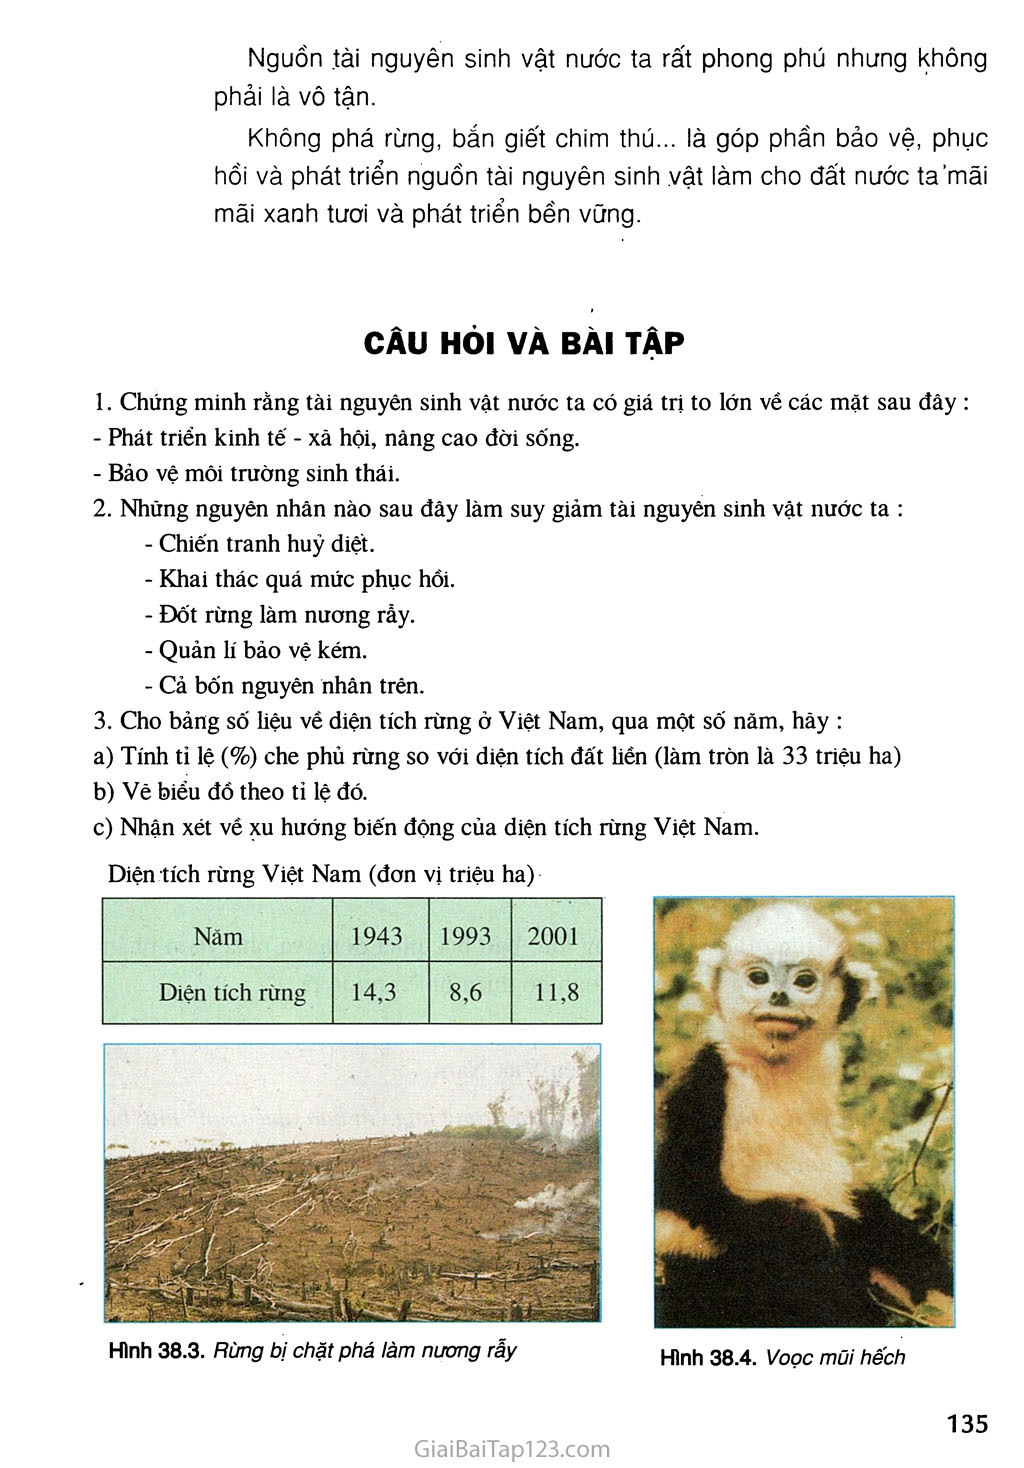 Bài 38. Bảo vệ tài nguyên sinh vật Việt Nam trang 3